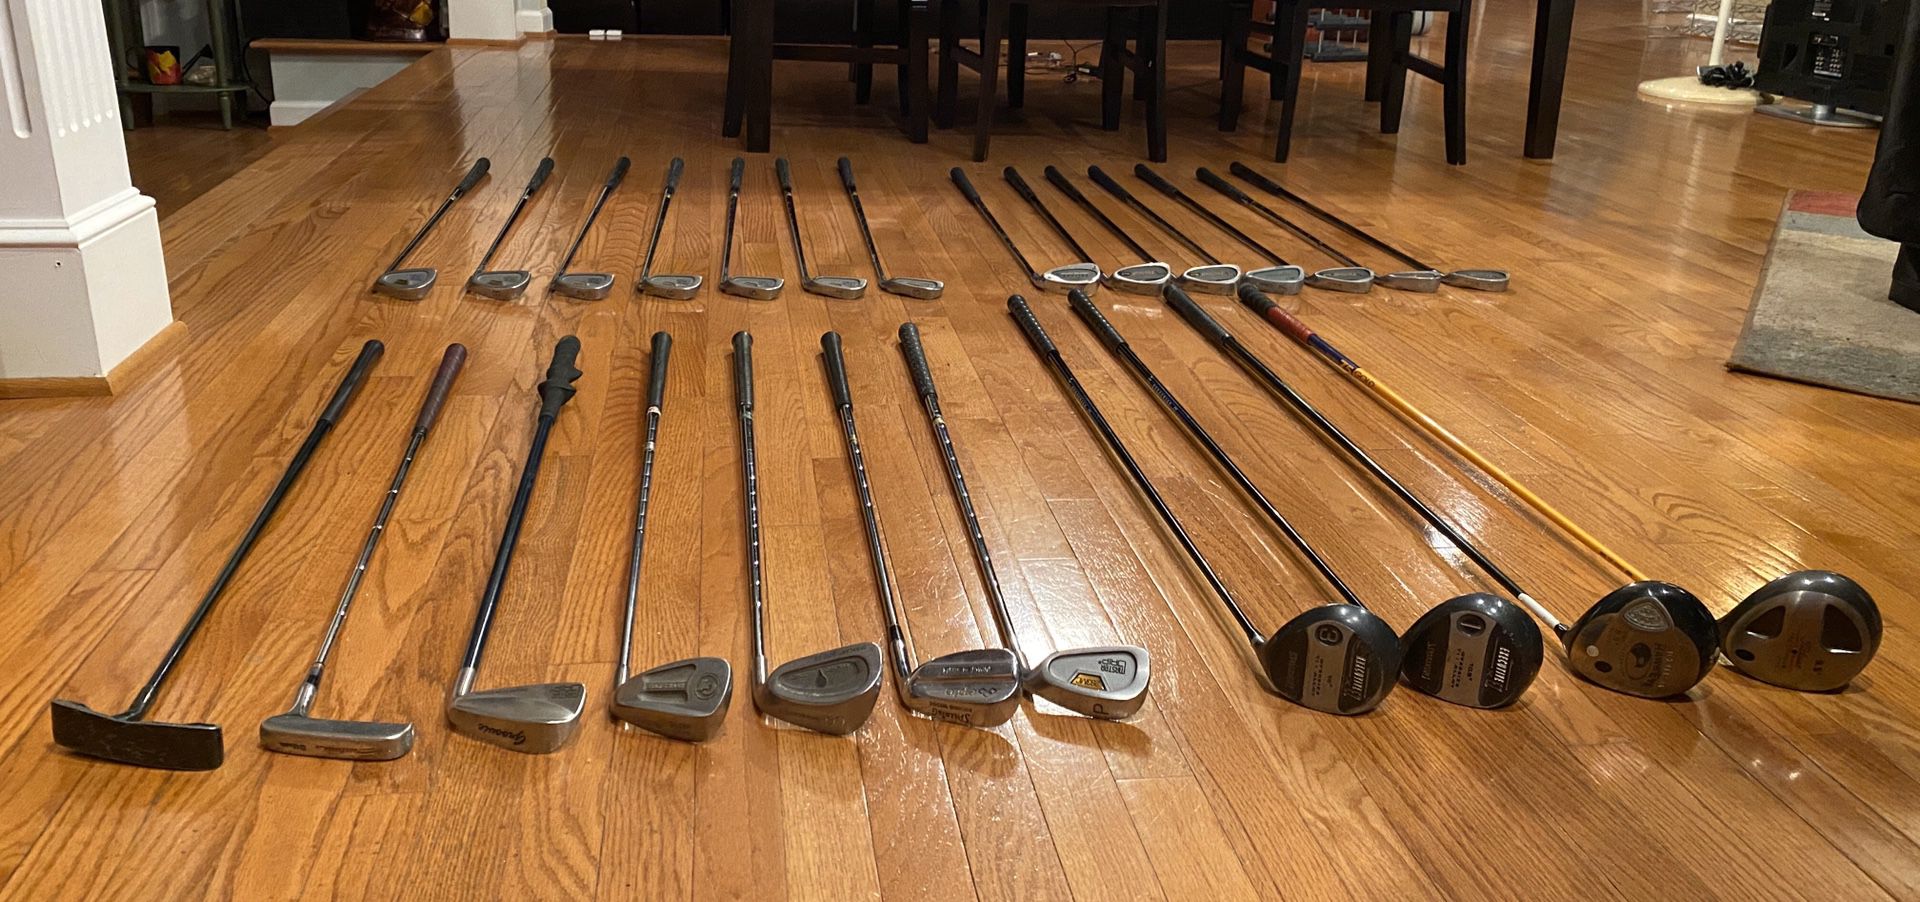 Golf clubs (25), golf bag, new box of titleist golf balls, and golf tees